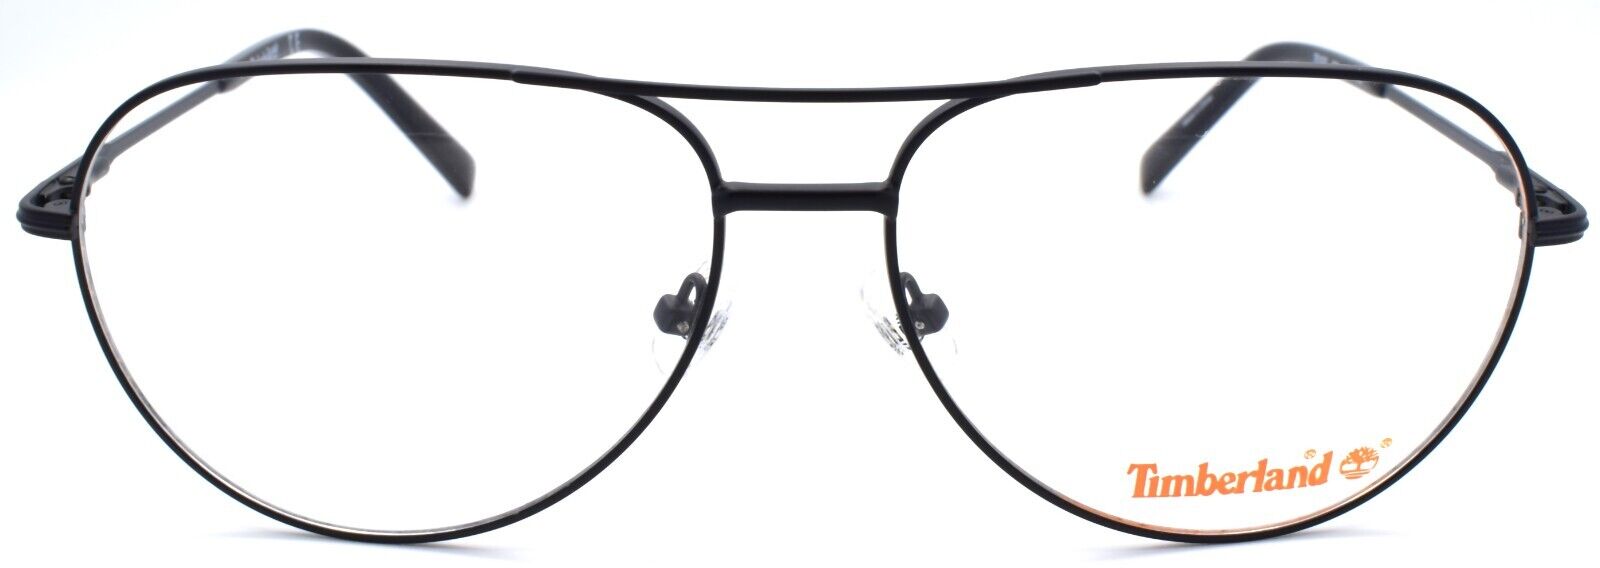 2-TIMBERLAND TB1630 002 Men's Eyeglasses Aviator Large 59-15-150 Matte Black-889214048783-IKSpecs